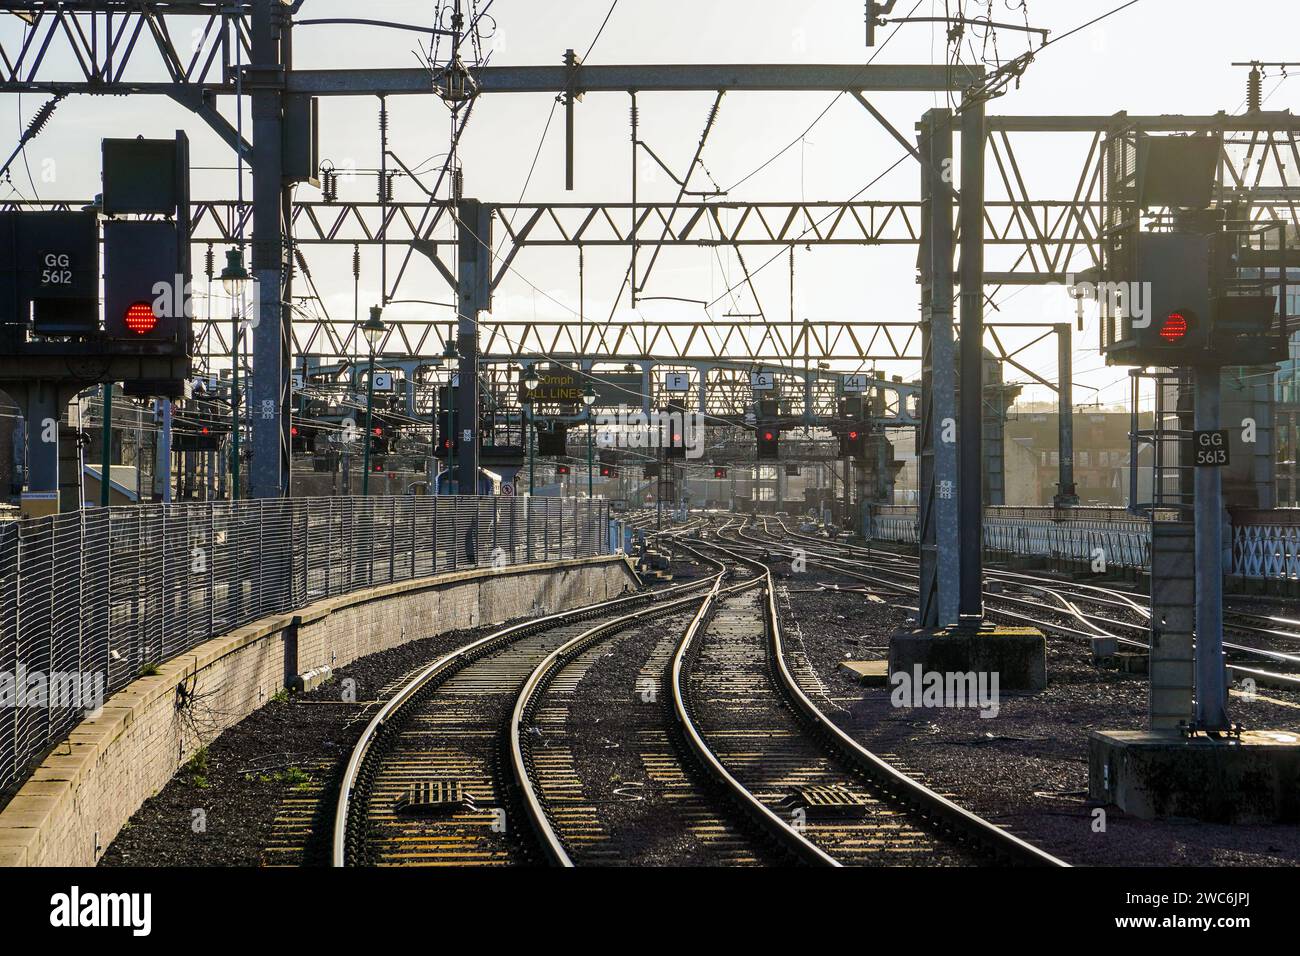 Binari ferroviari e segnali a cavalletto in rosso sull'appendice per la stazione ferroviaria centrale di Glasgow, Glasgow, Scozia, Regno Unito Foto Stock